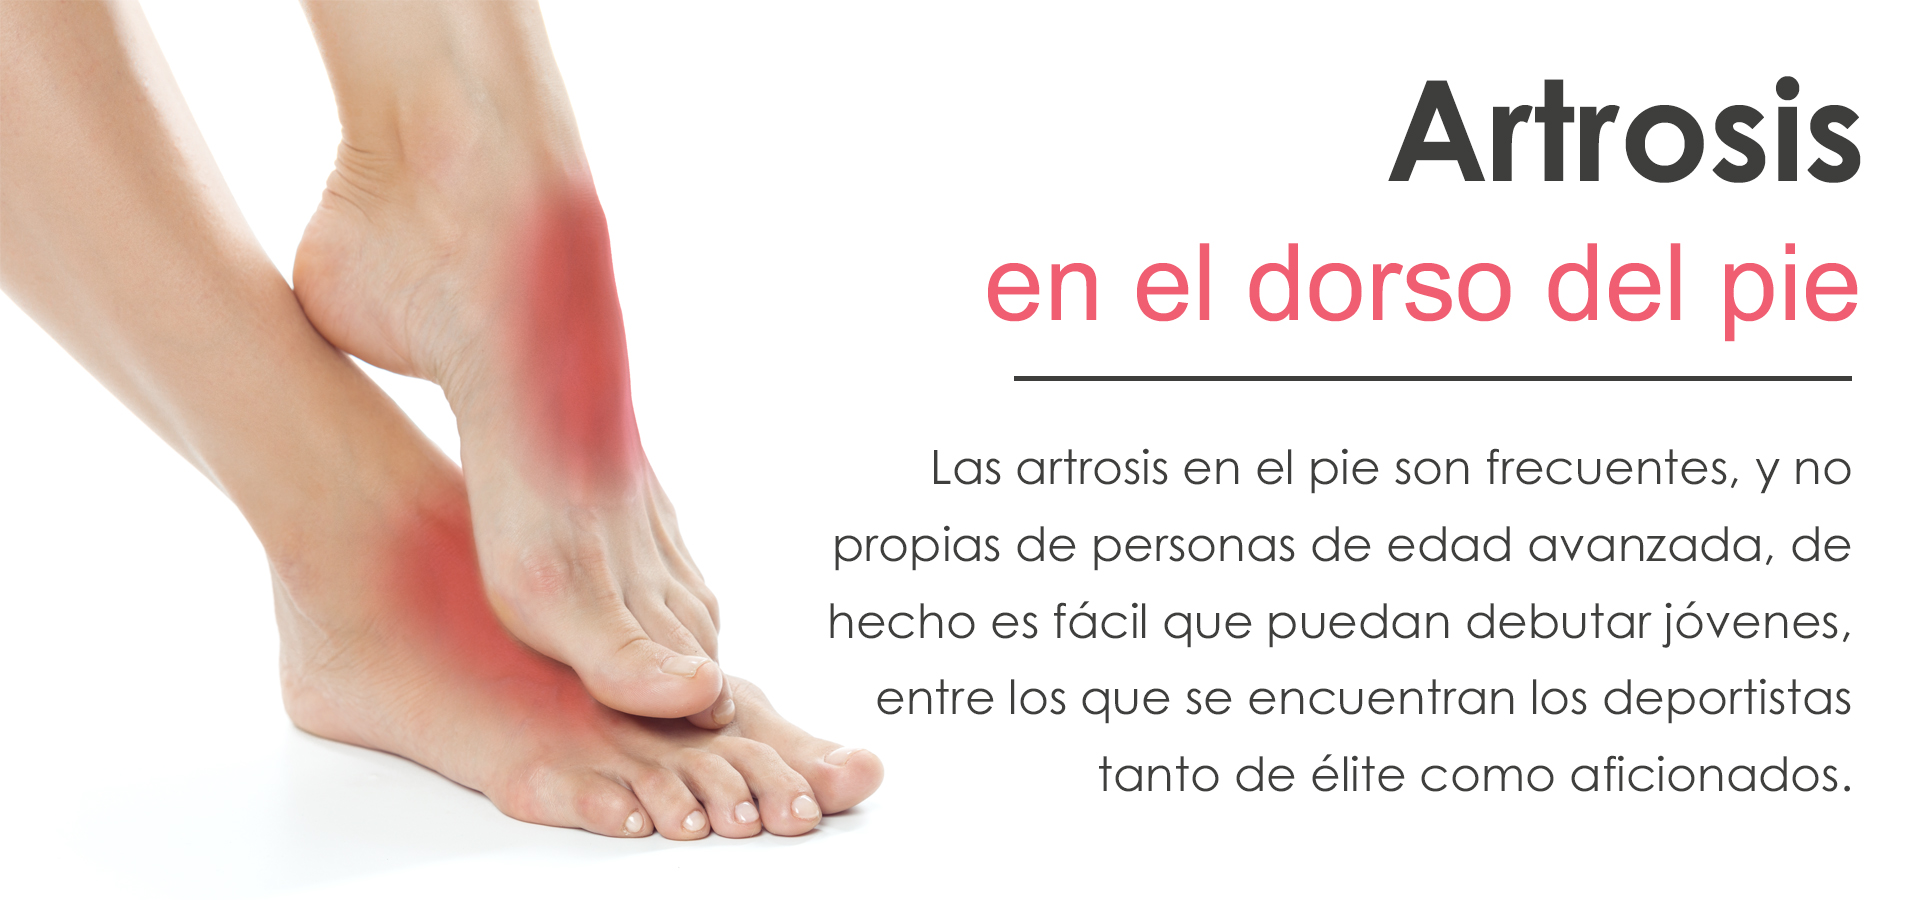 Artrosis en el dorso del pie